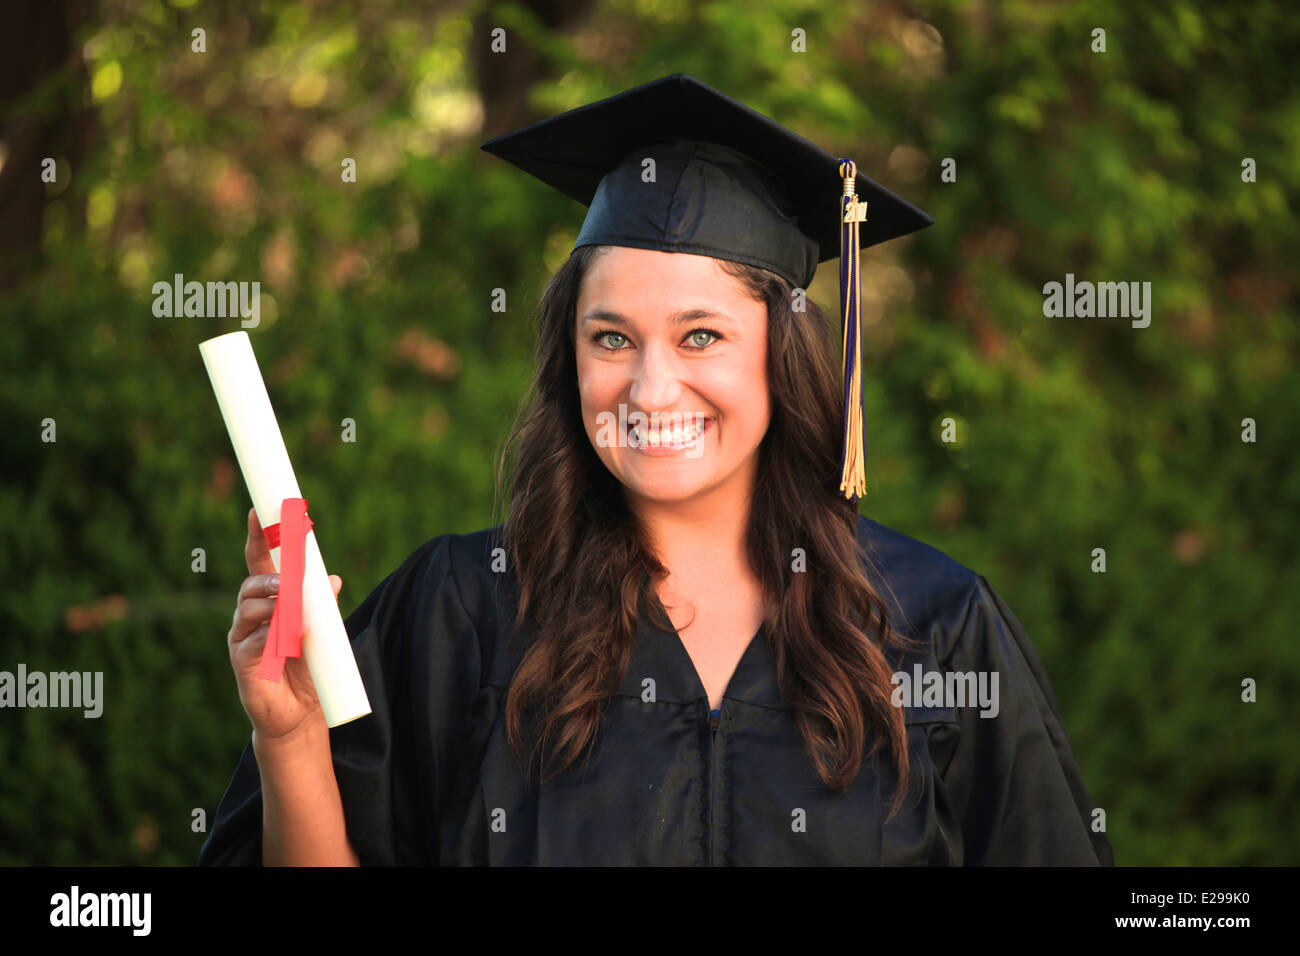 Ein schönes Mädchen mit braunen Haaren und blauen Augen tragen einen College Abschluss Mütze und Mantel lächelt und hat ihr Diplom Stockfoto